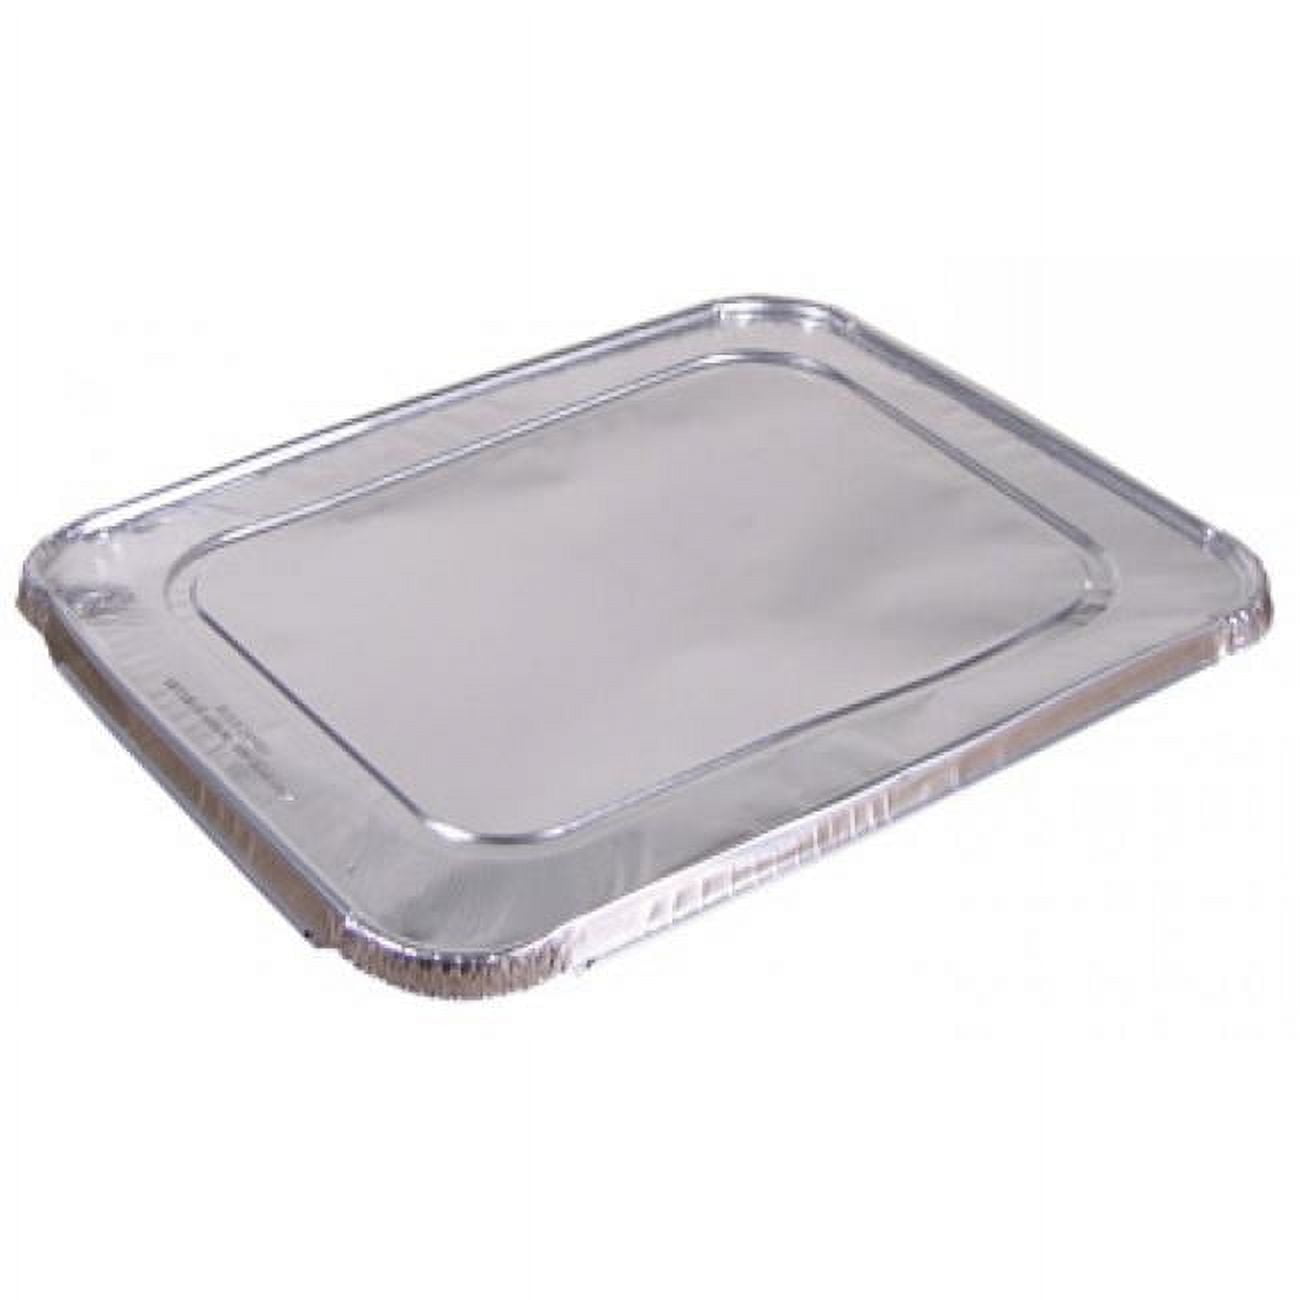 Y101230 Cpc Half Size Aluminum Foil Steam Table Pan Lid, Case Of 100